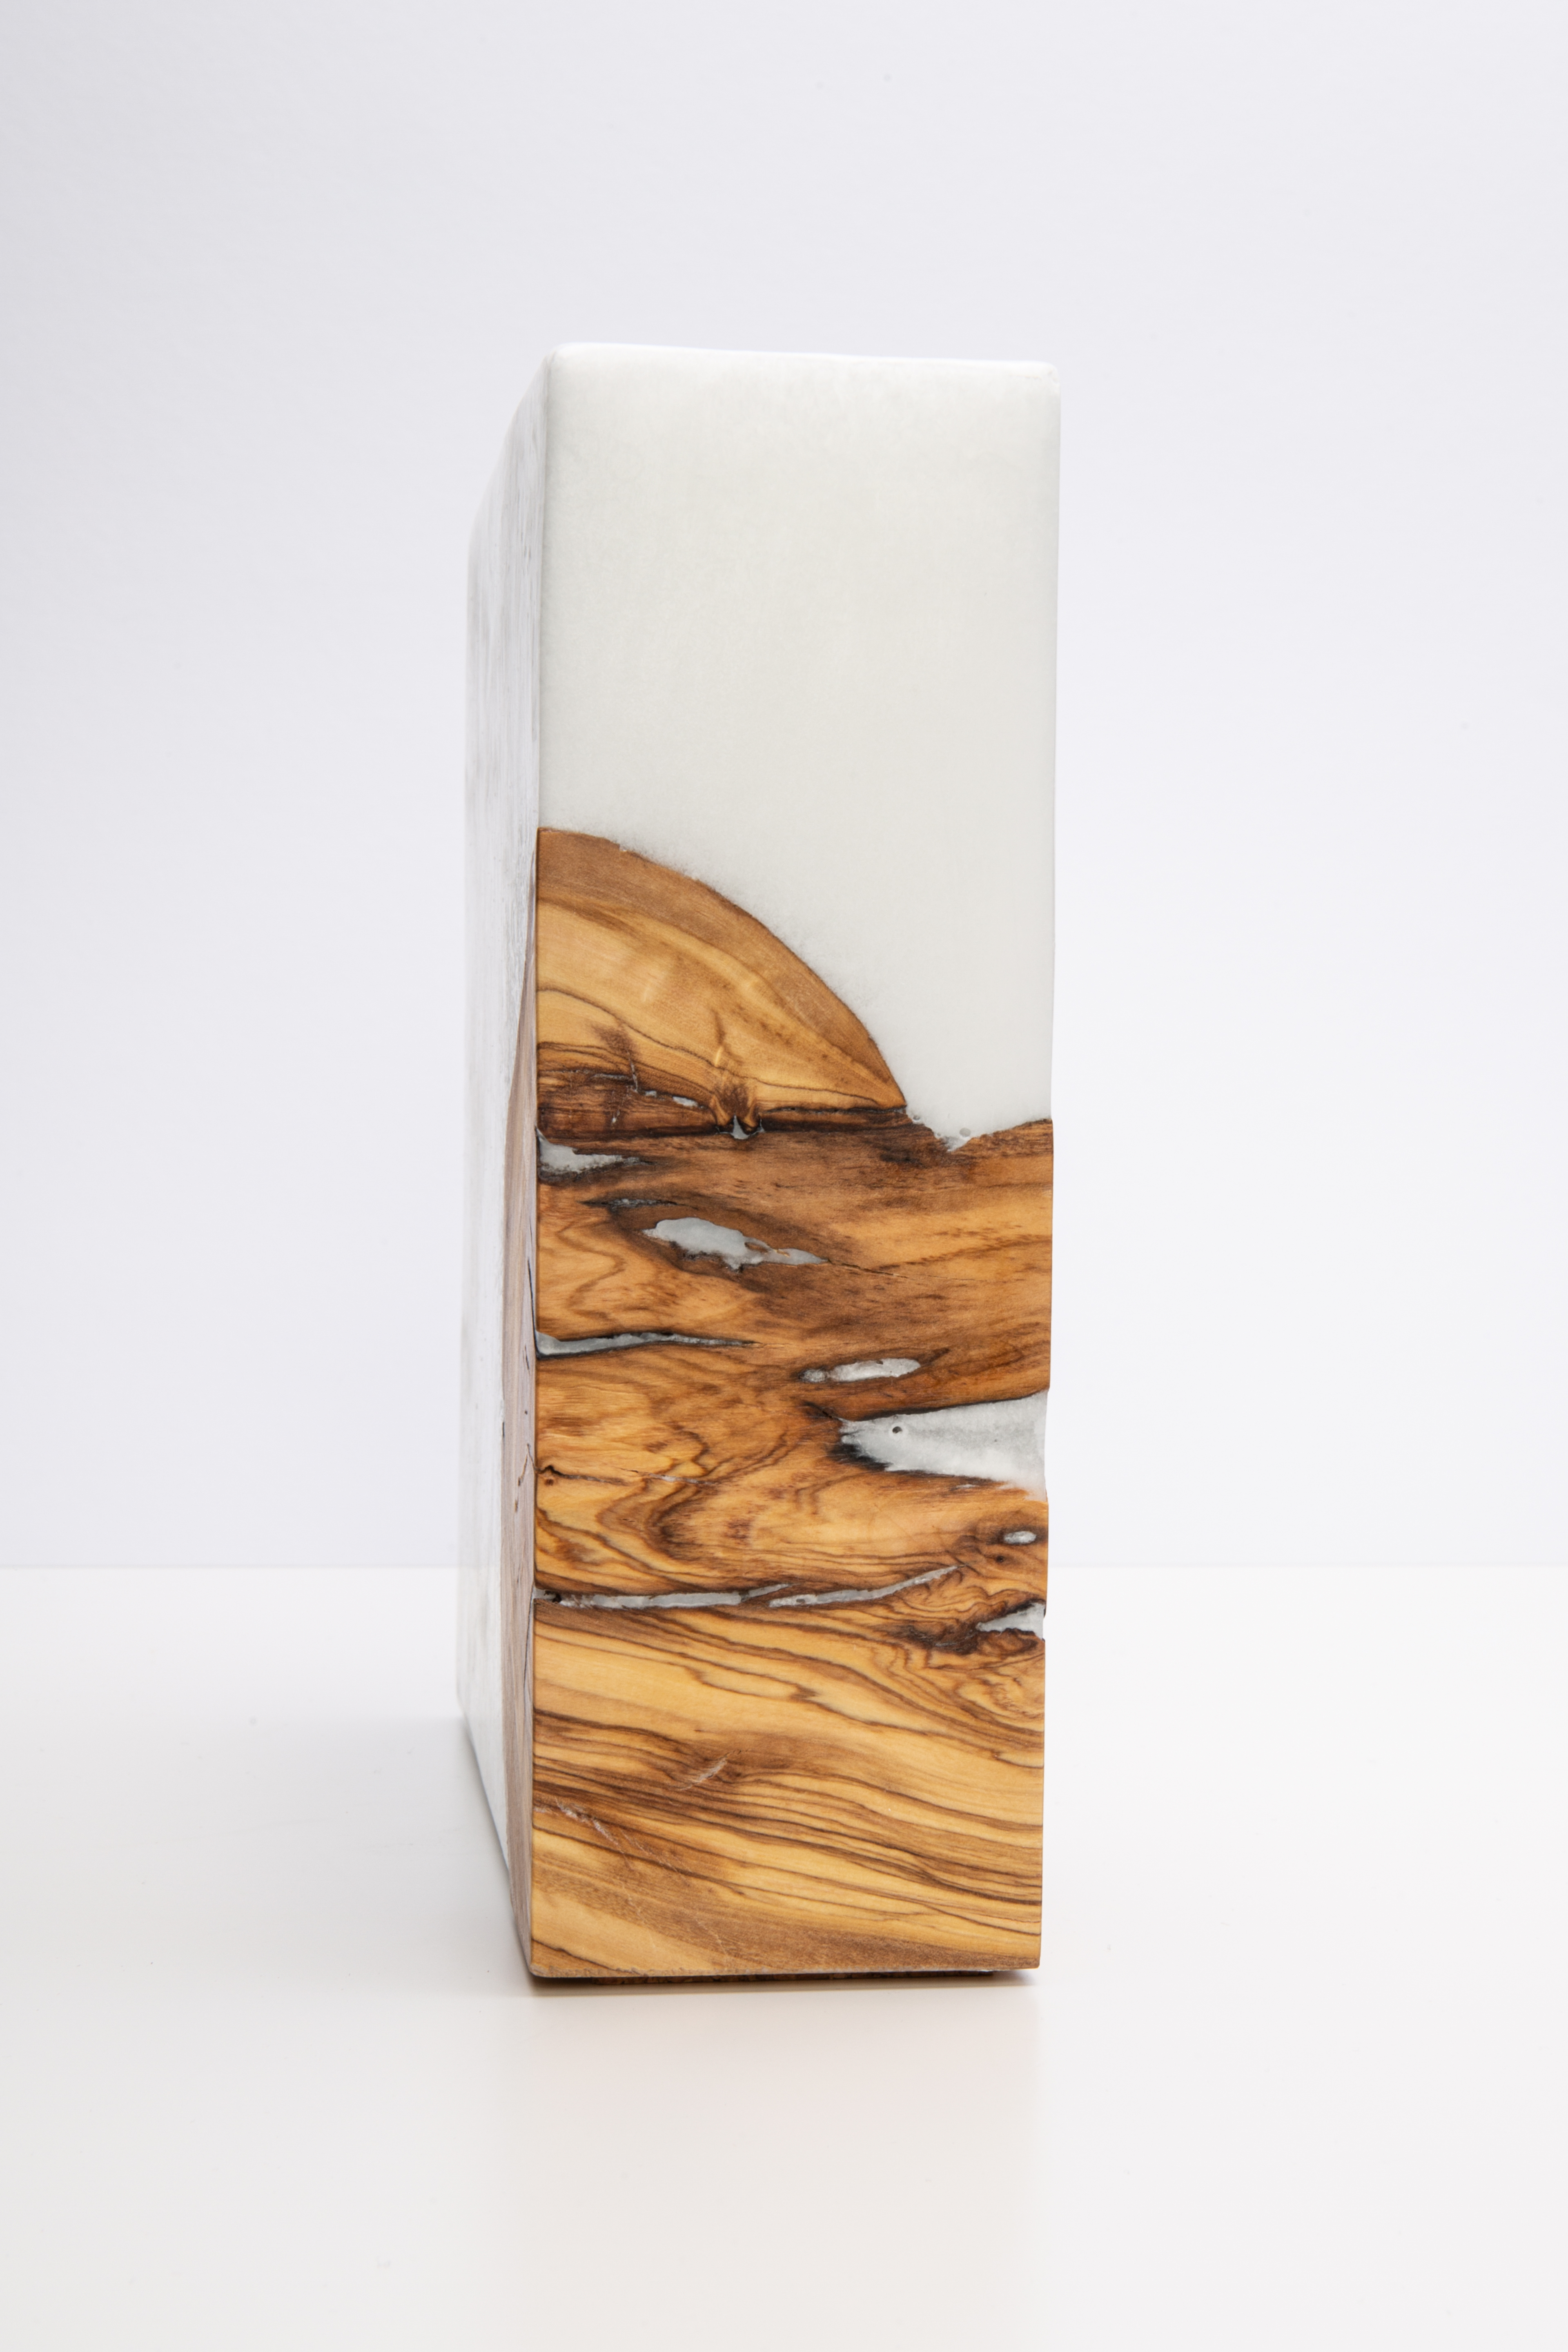 Crystal Holzkerzen Quadrat Landhaus-Optik 20x20x7cm mit Teelichteinsatz